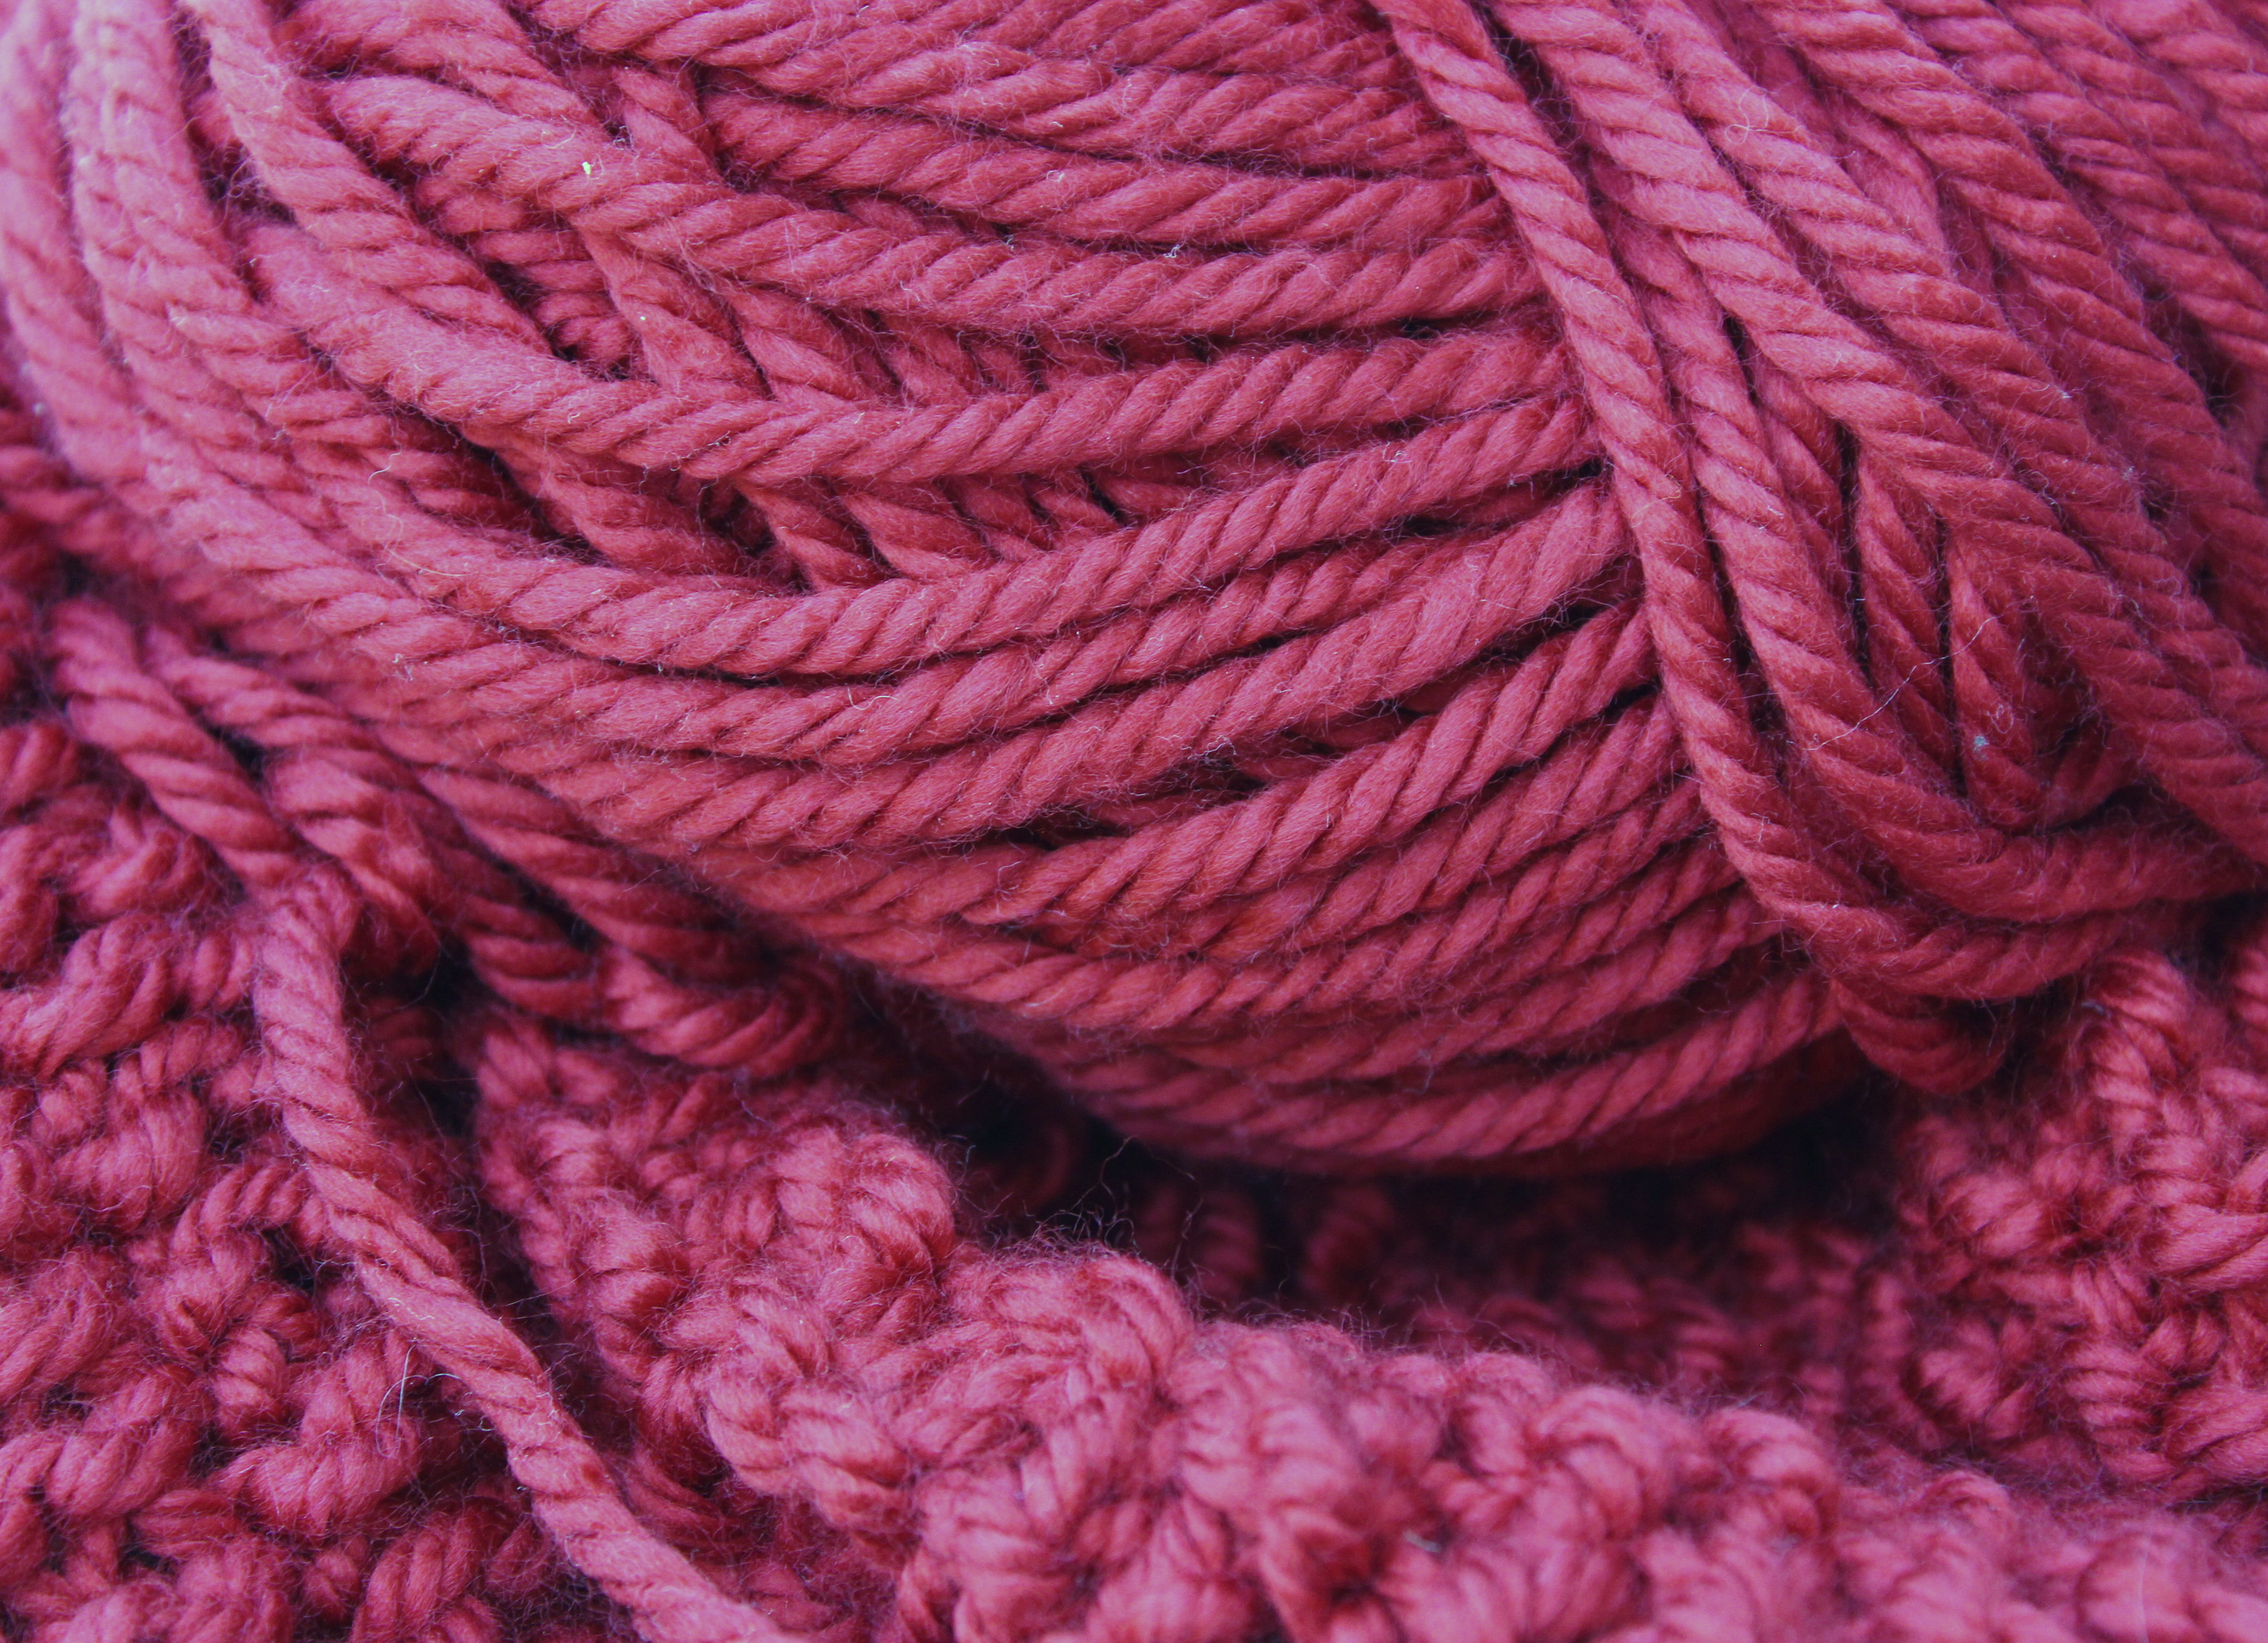 File:Weaving wool.jpg - Wikimedia Commons